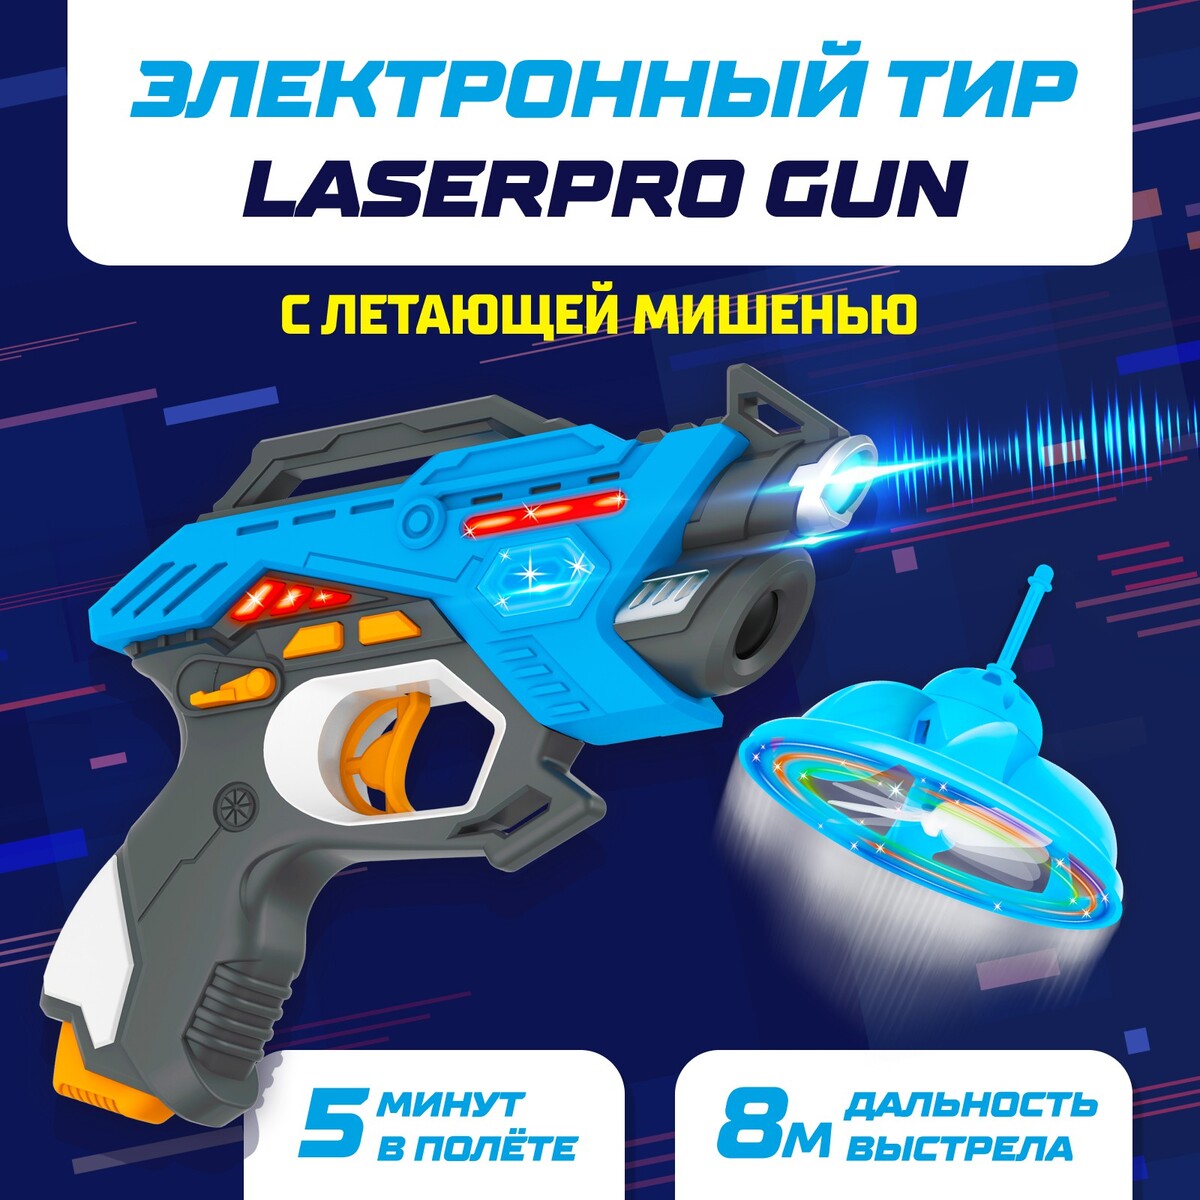   laserpro gun   